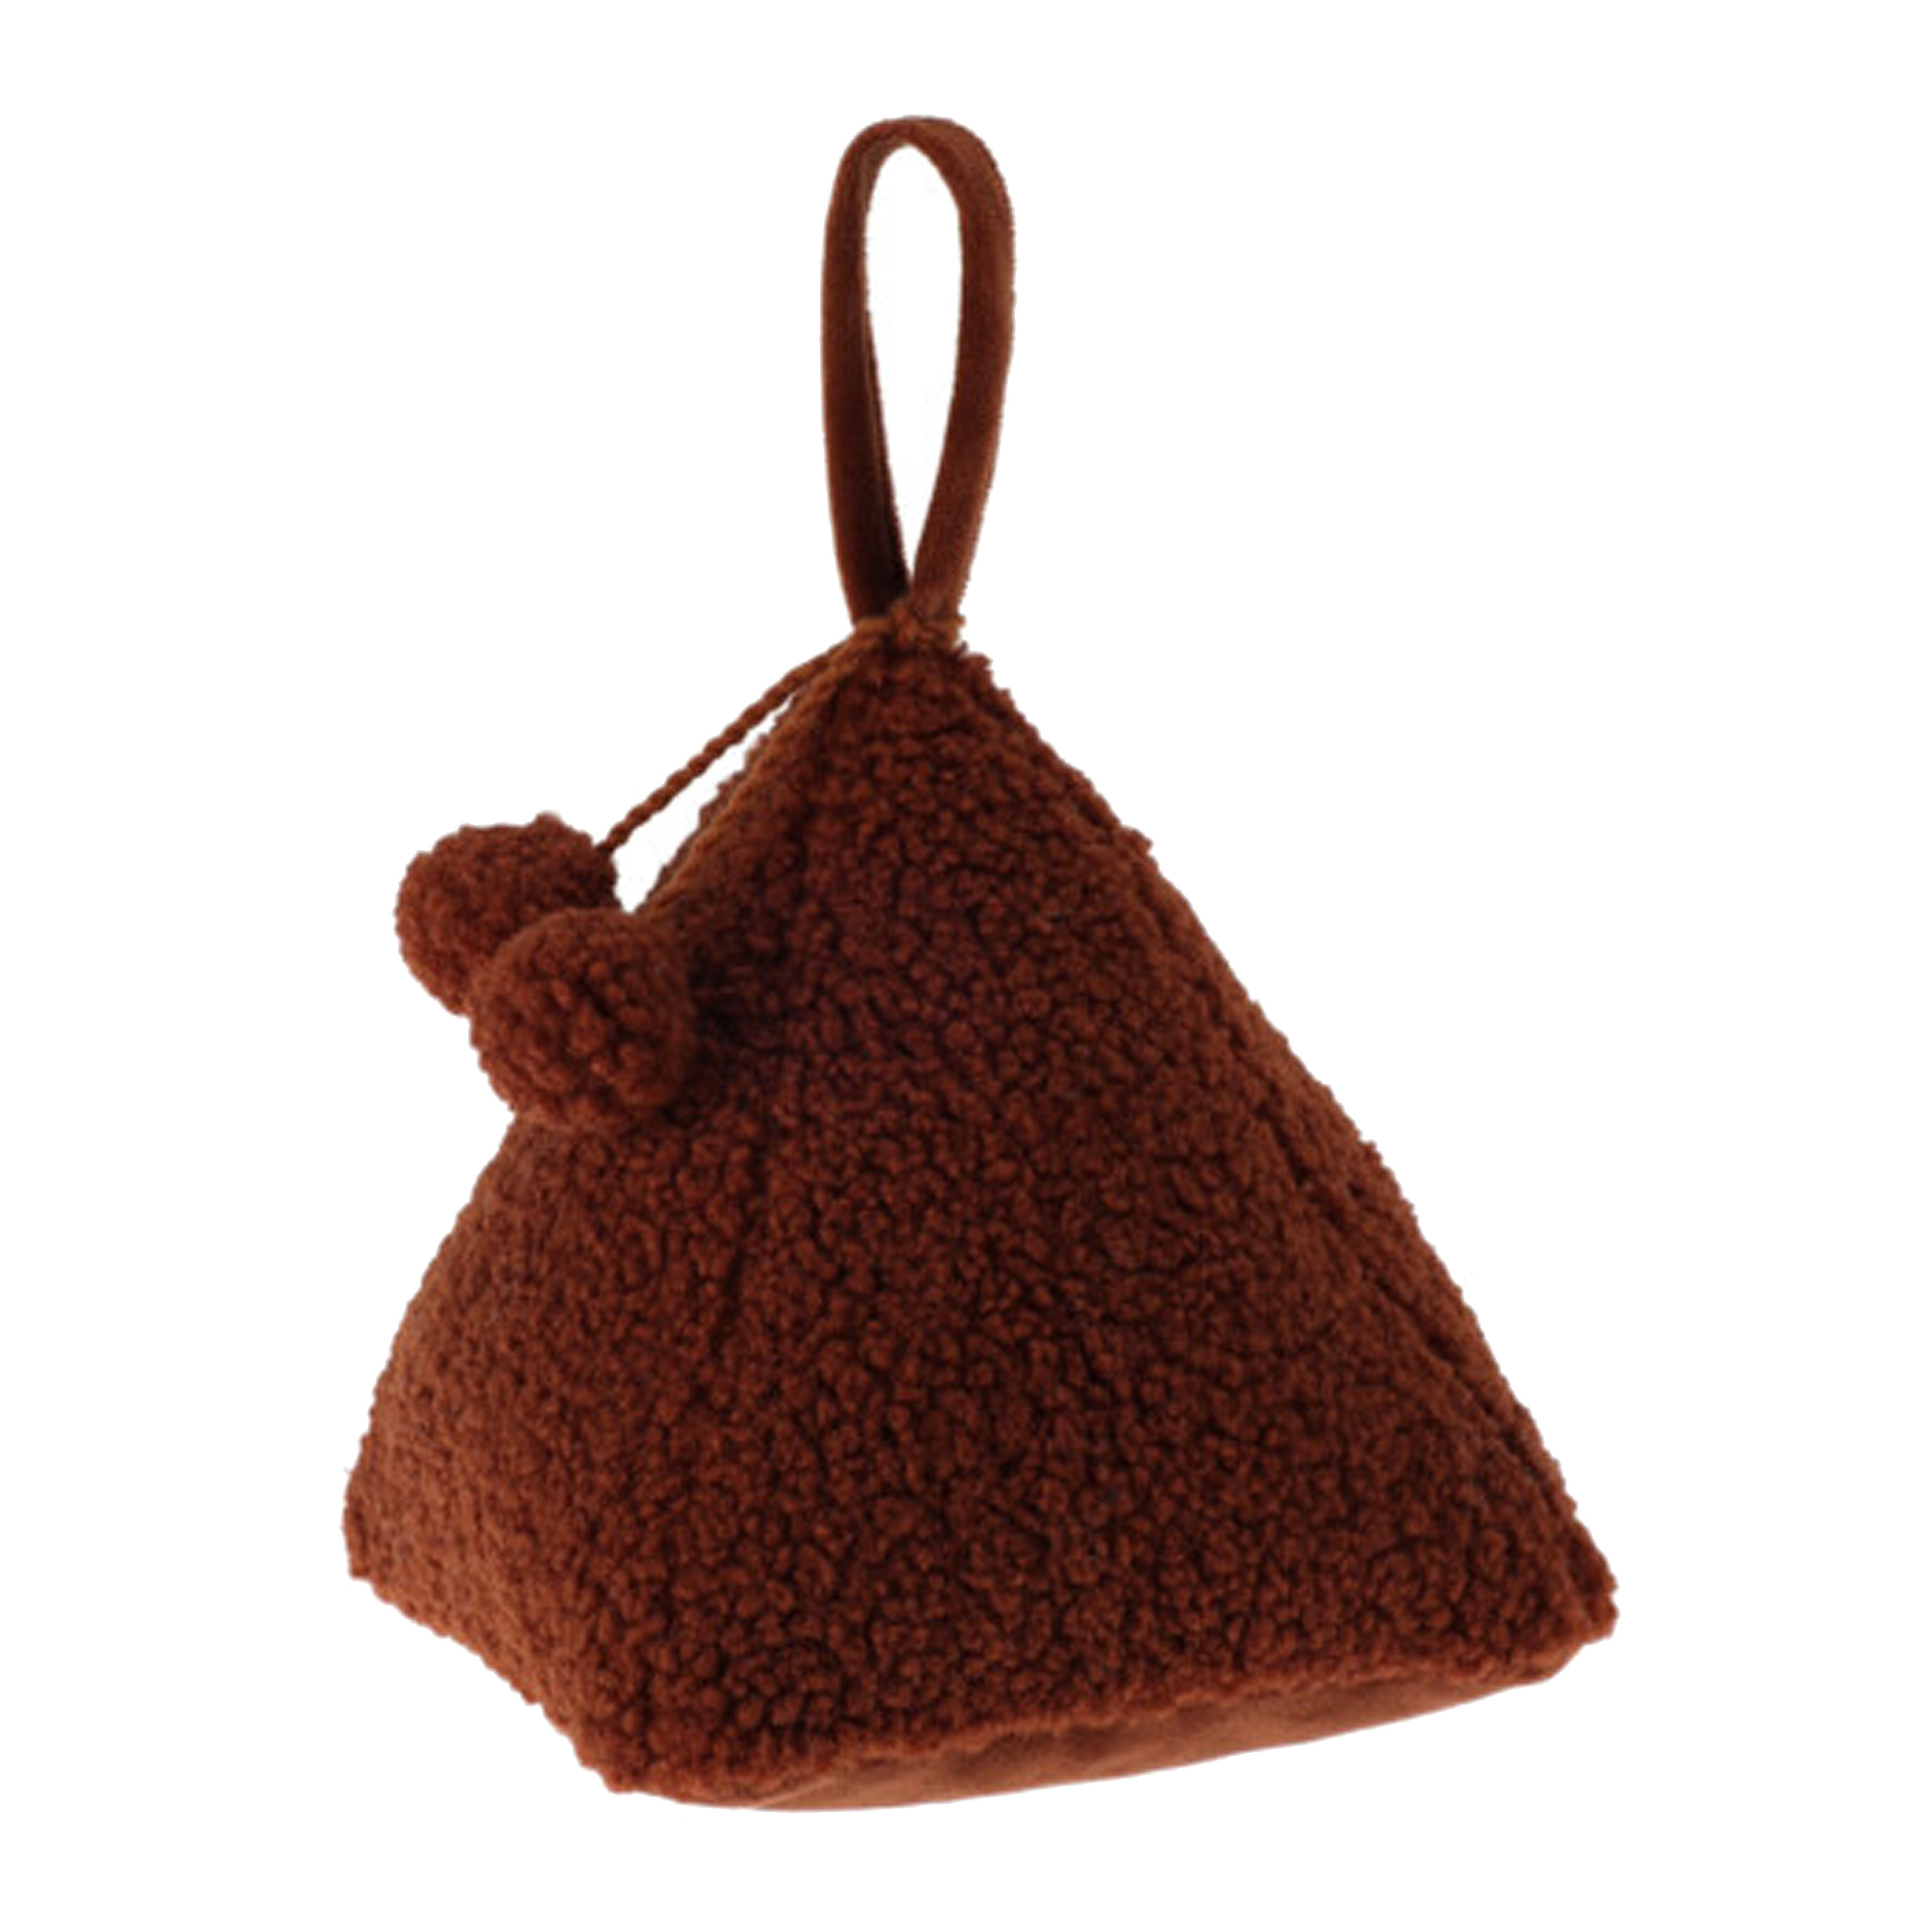 H&S Collection Deurstopper Teddy - roest bruin - 17 x 17 x 16 - polyester - piramide vorm - met verplaats lus -